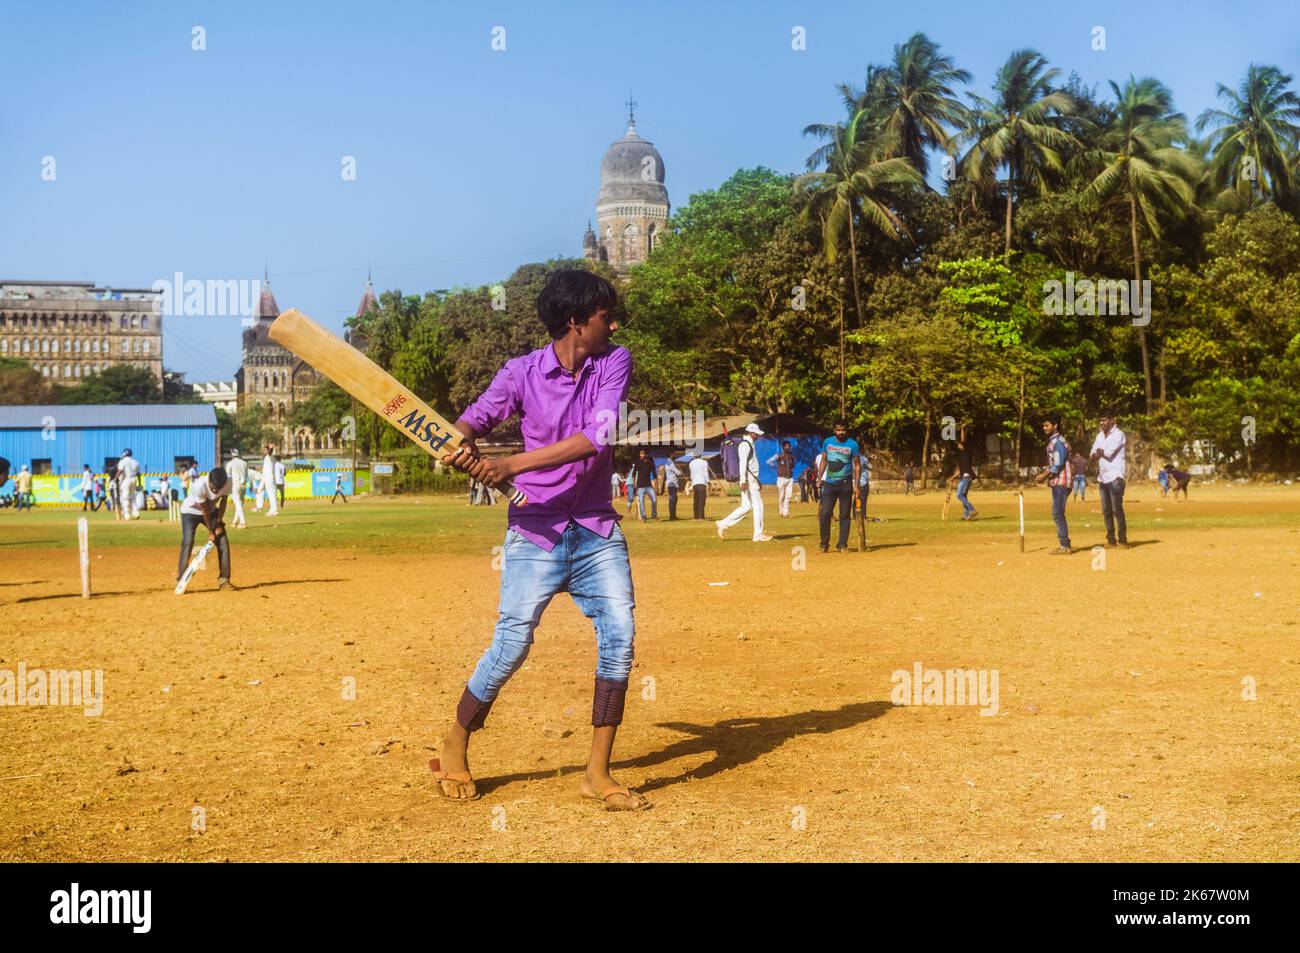 Mumbai, Maharashtra, India : UN giovane gioca il cricket al parco di Oval Maidan nel distretto di Churchgate. Foto Stock